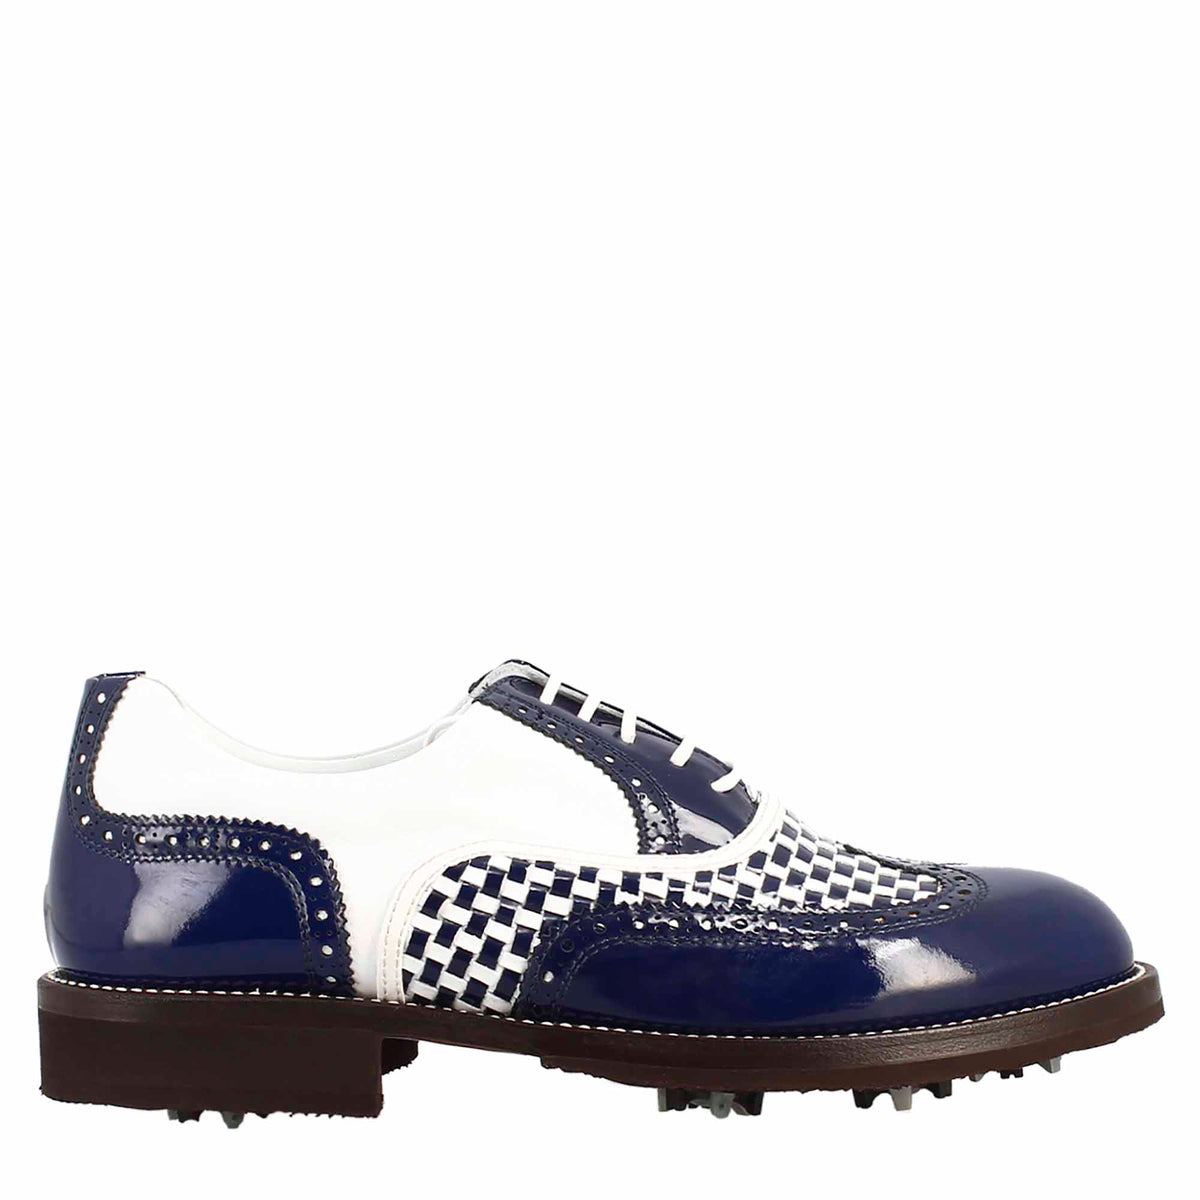 Chaussures de golf pour homme en cuir bleu et blanc avec détails de type brogue, fabriquées à la main